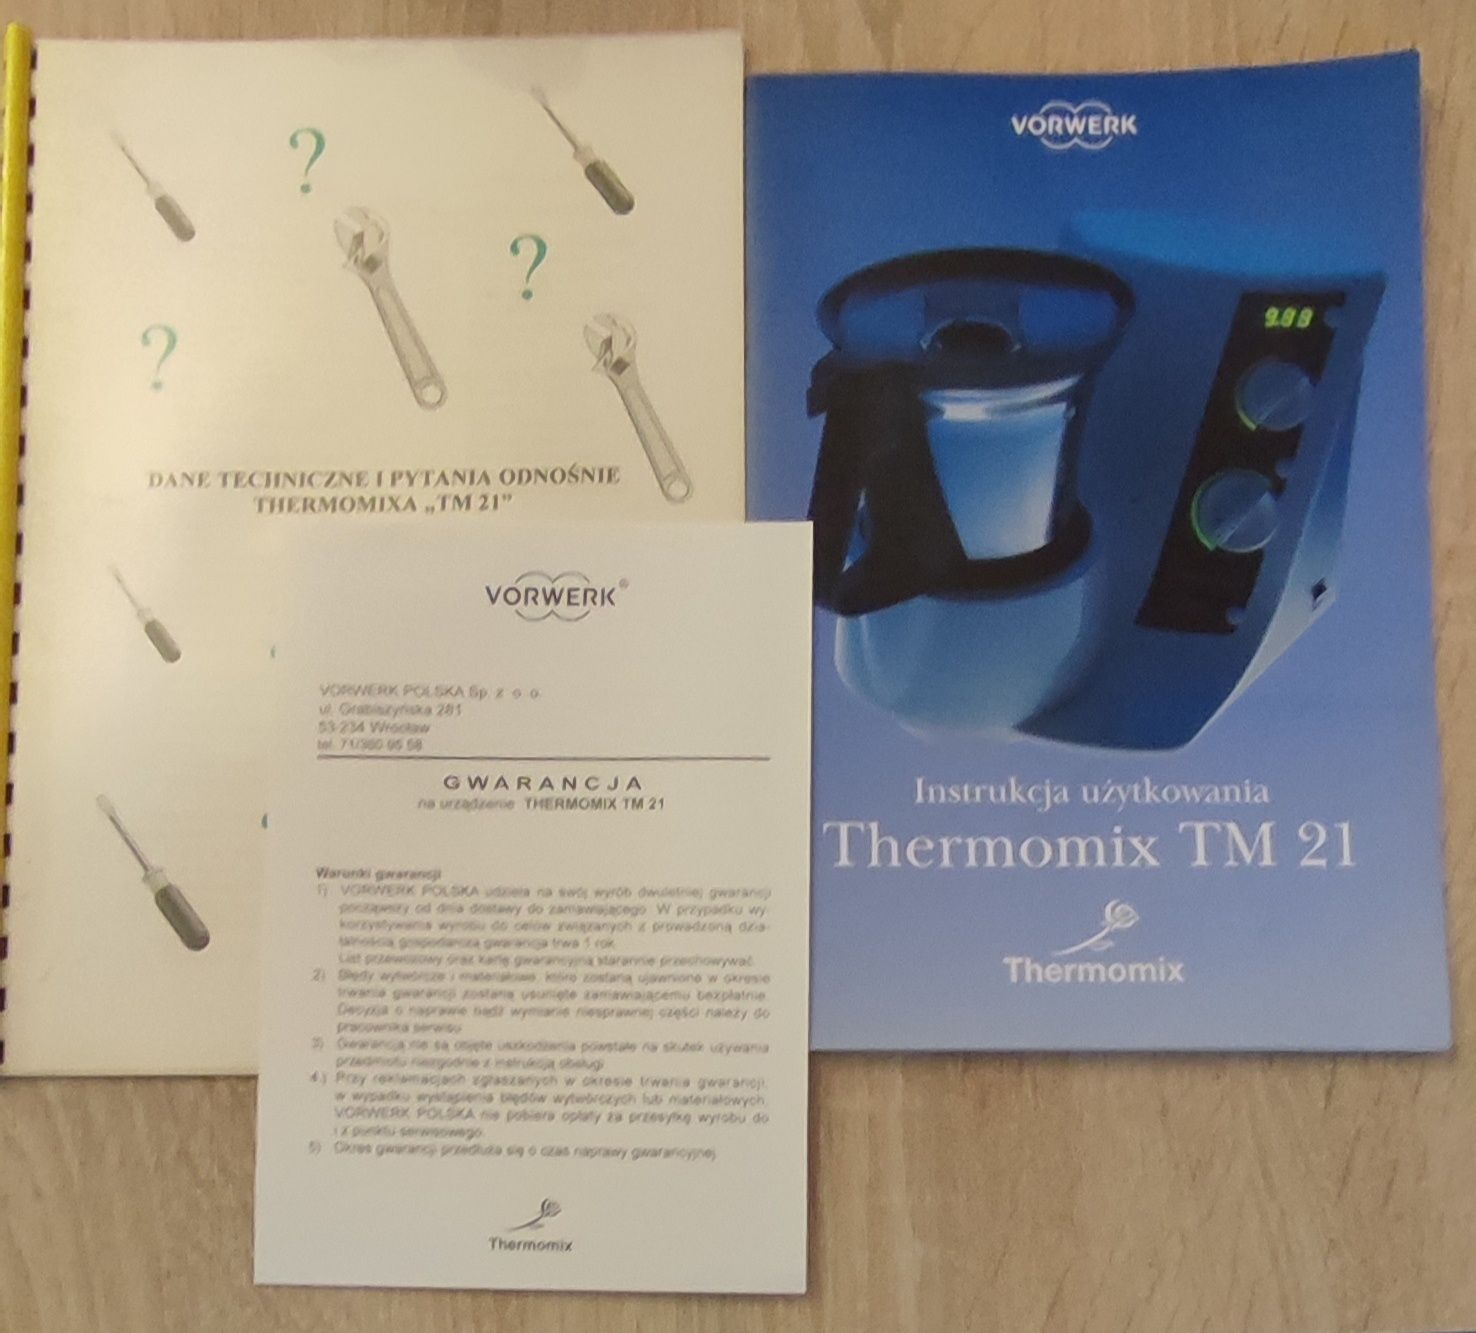 Instrukcja użytkowania Thermomix TM 21